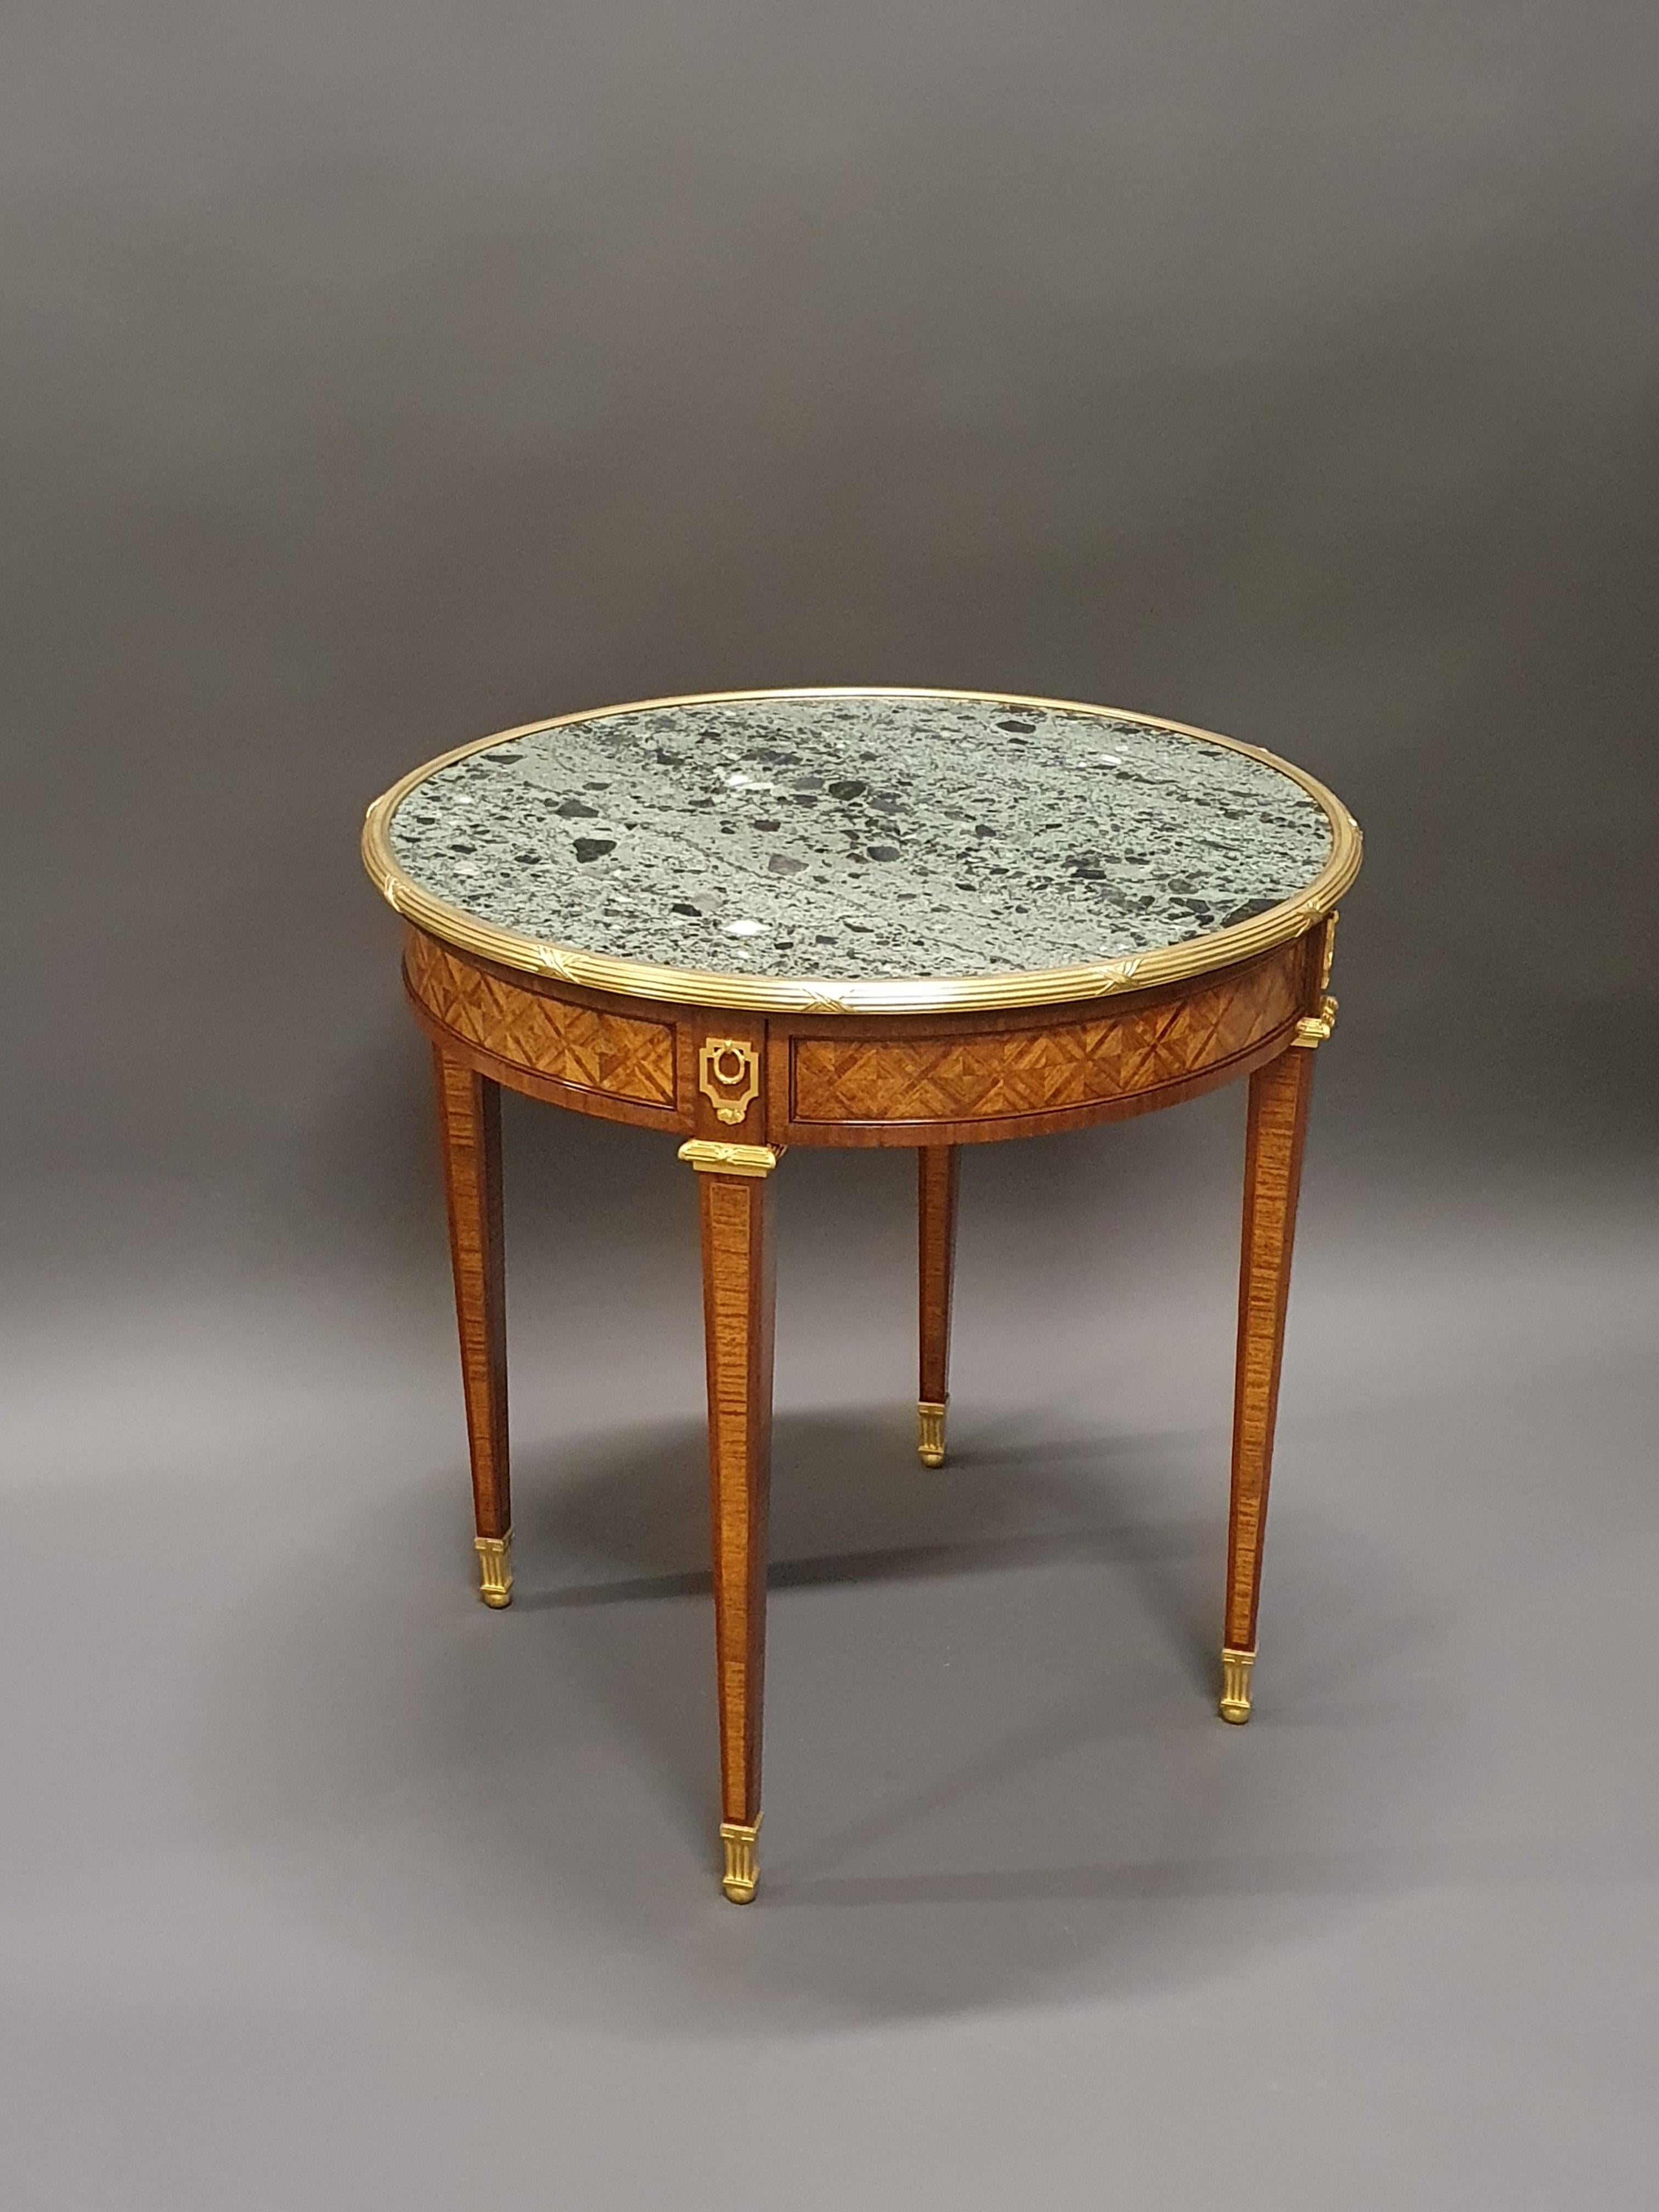 Grande table de guéridon de style Louis XVI en marqueterie de bois de roi avec des formes géométriques dans des cadres en acajou.

Magnifique ornementation en bronze doré finement ciselé.

Magnifique plateau en marbre brèche verte.

Ouvrage